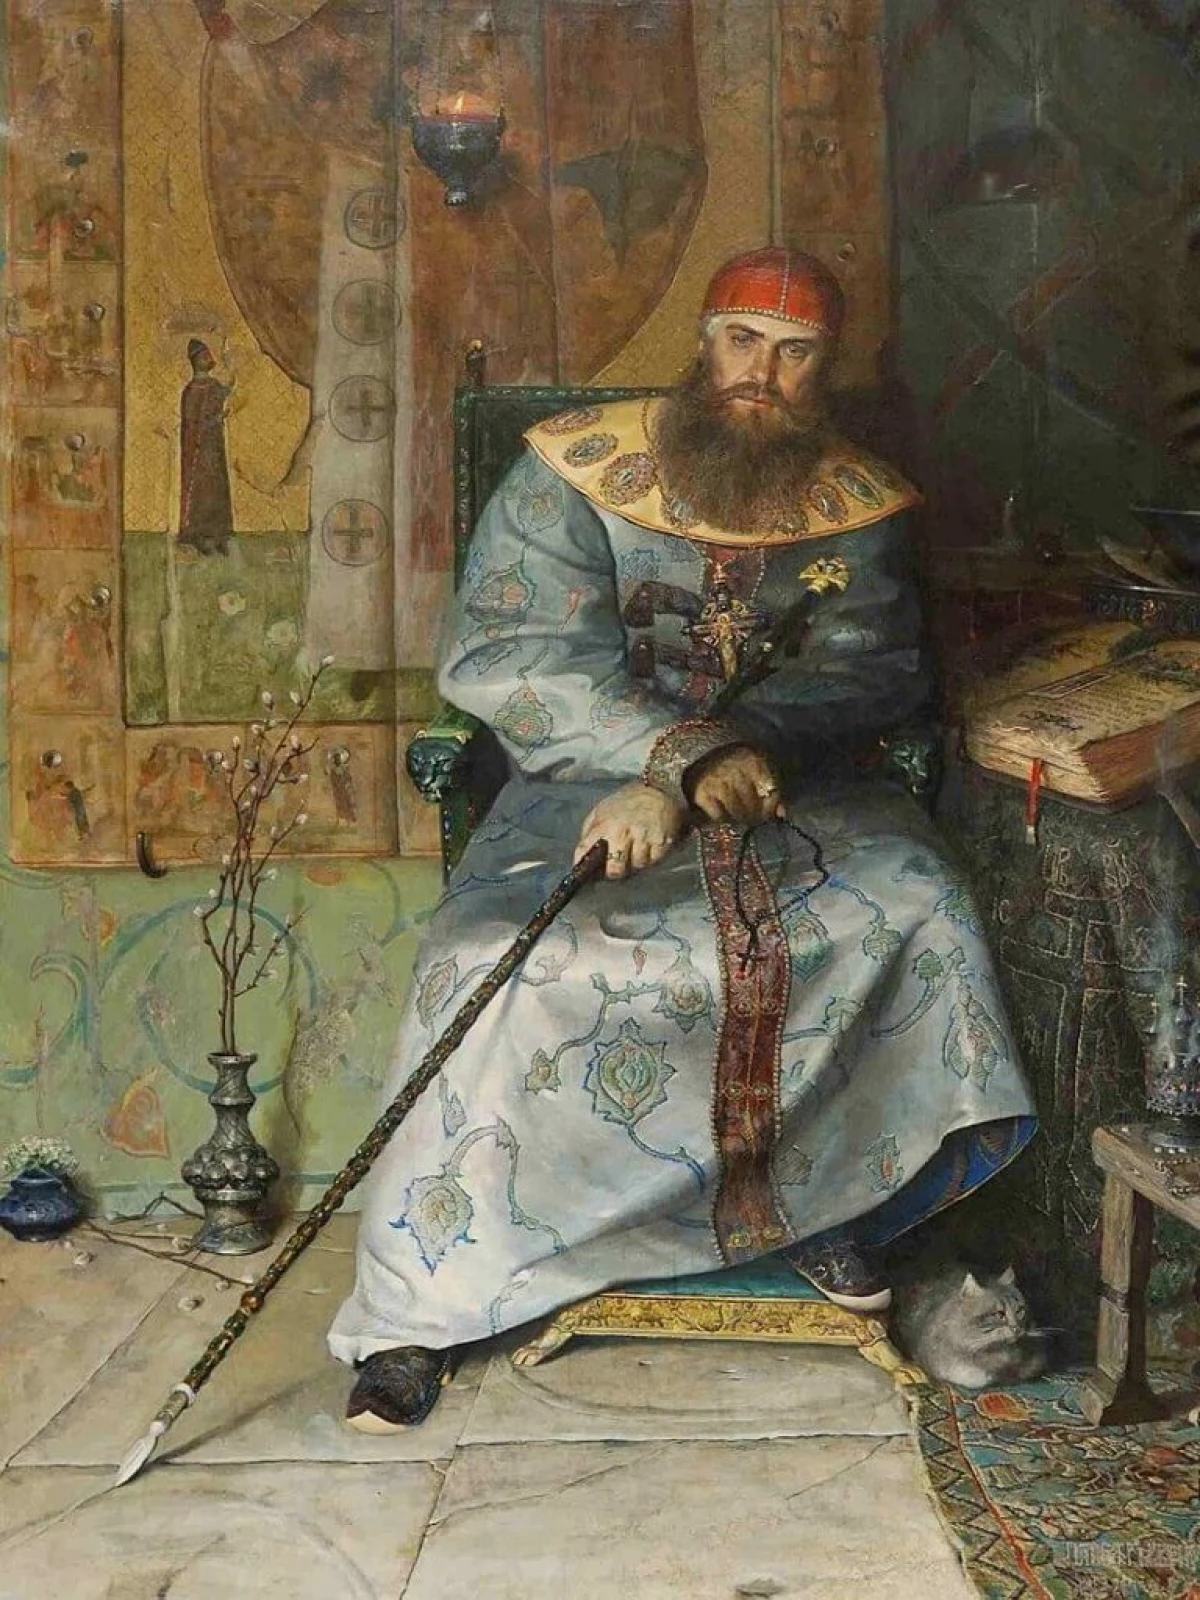 Waa maxay sababta dibuhabaynta lacageed ee Tsarrei Alexei Romanov aysan guuleysan? 13844_1